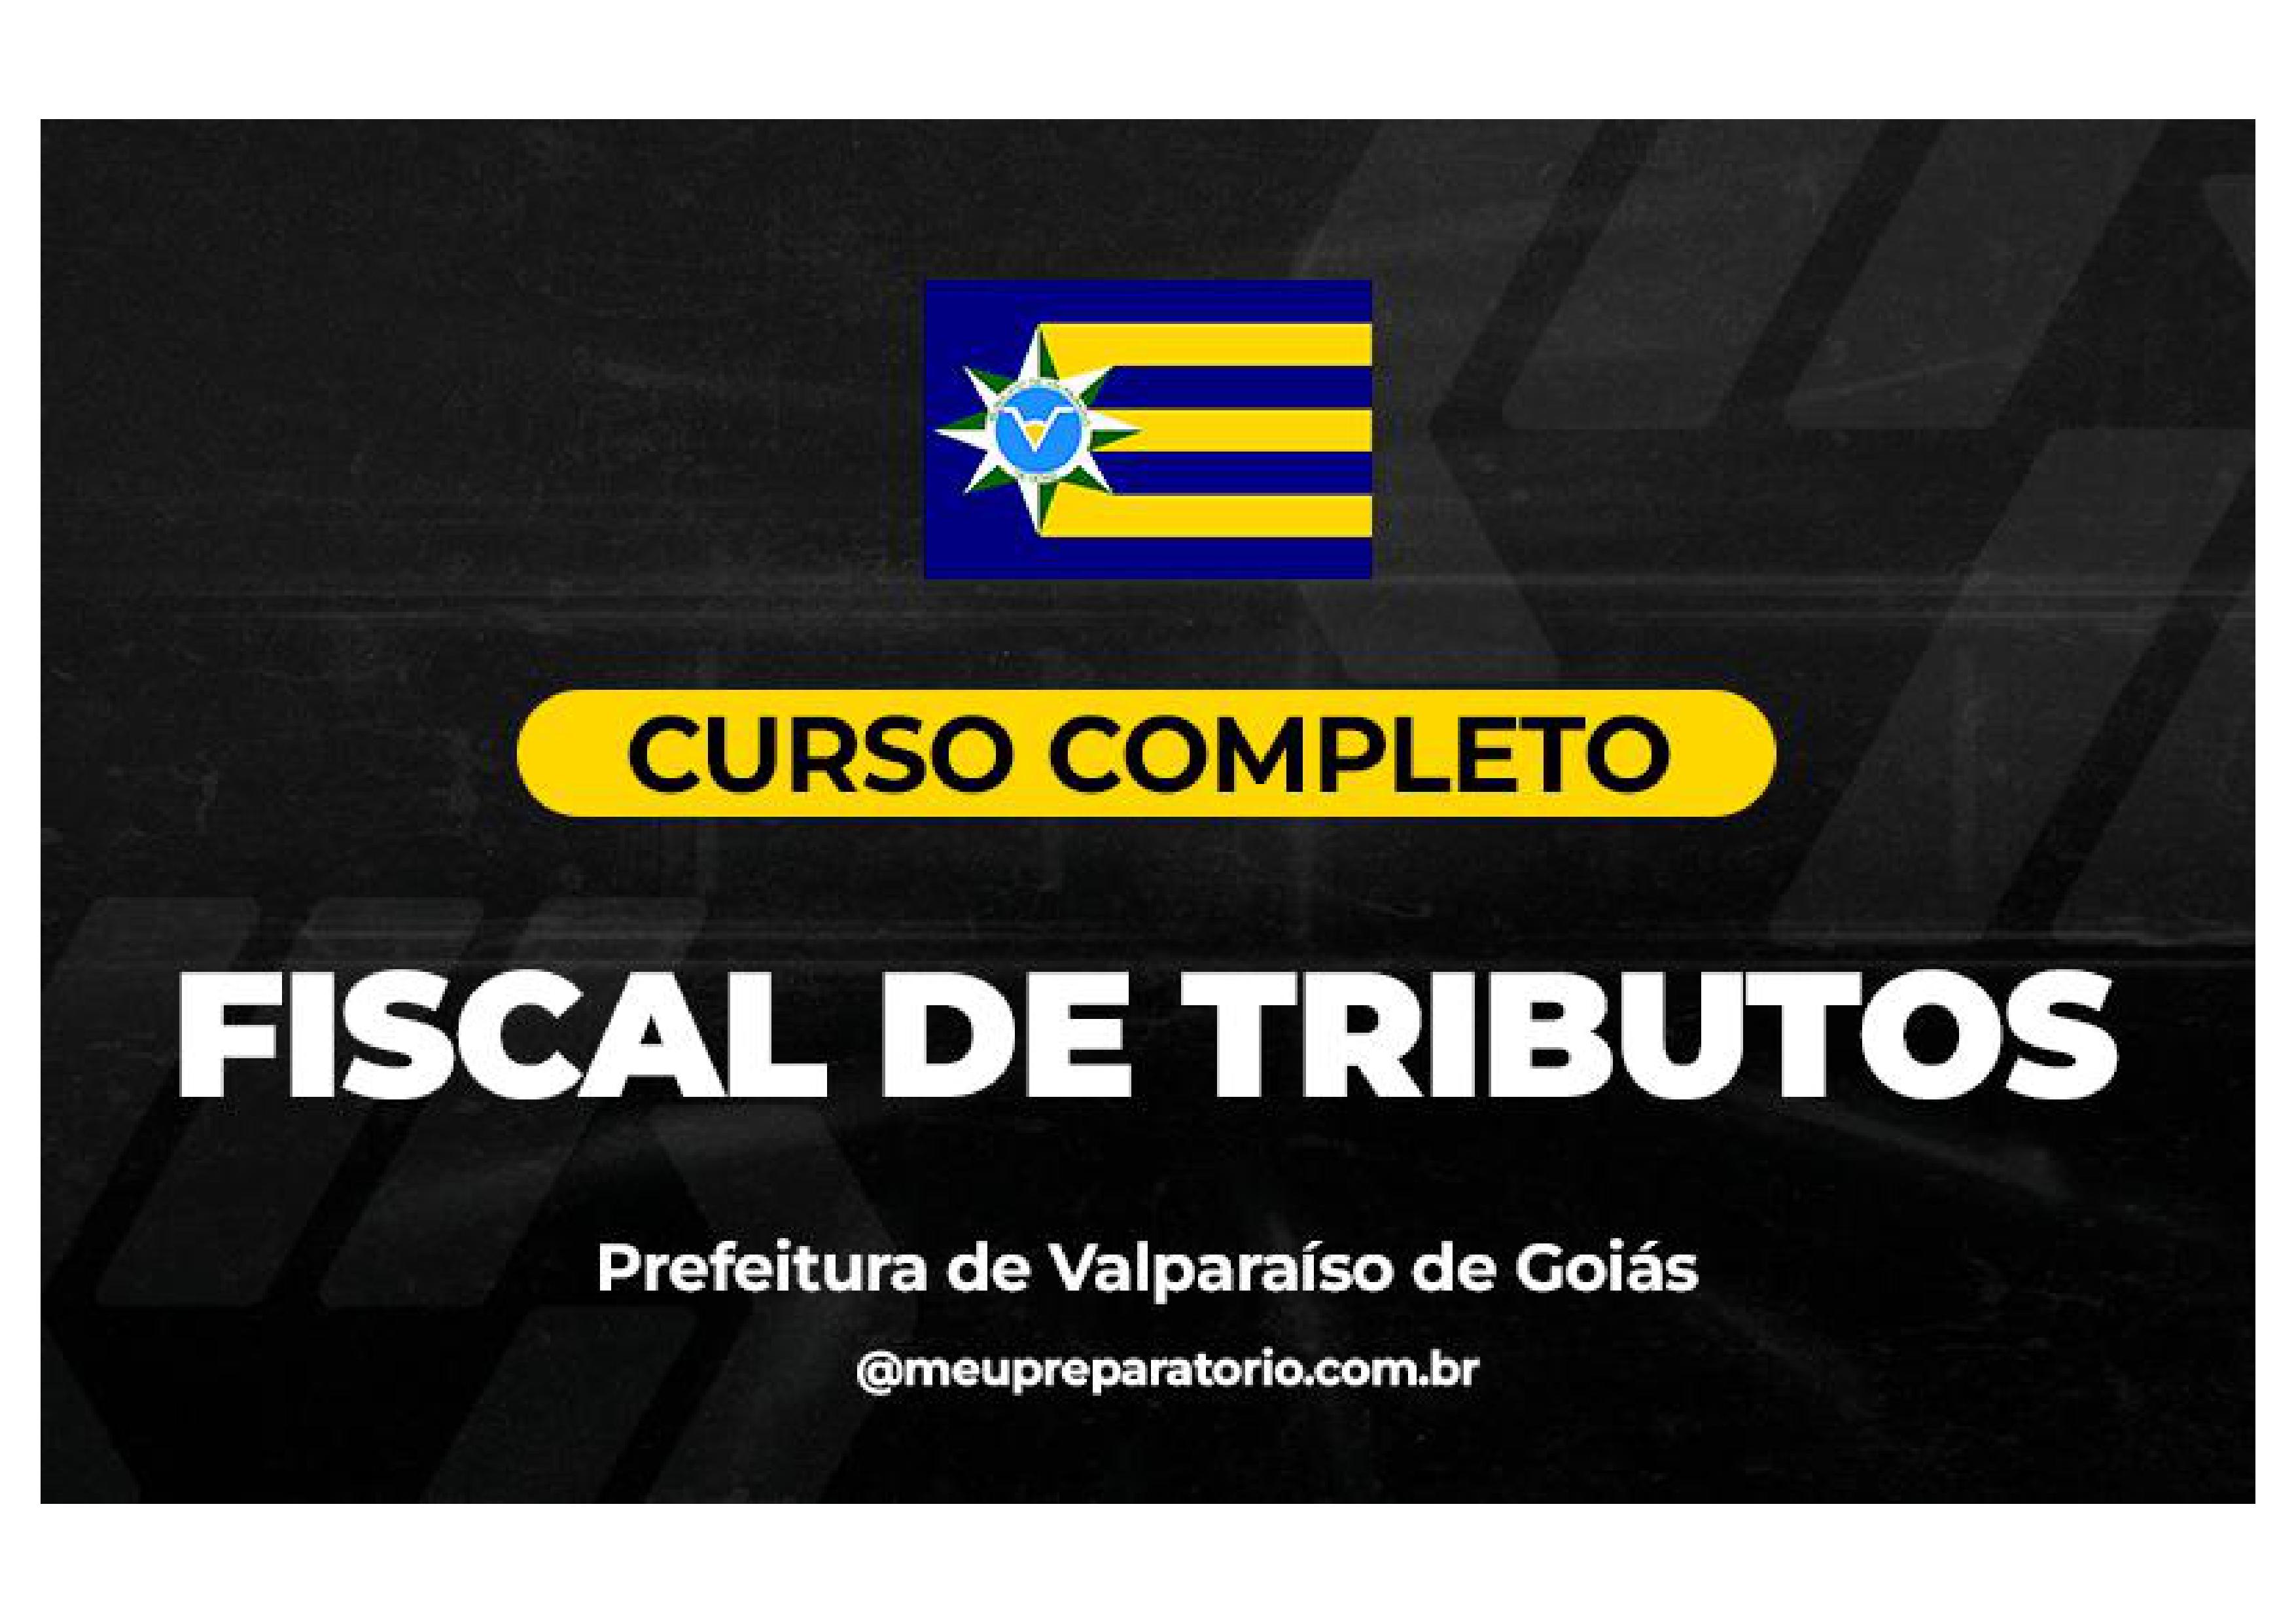 Fiscal de Tributos - Valparaíso (GO)